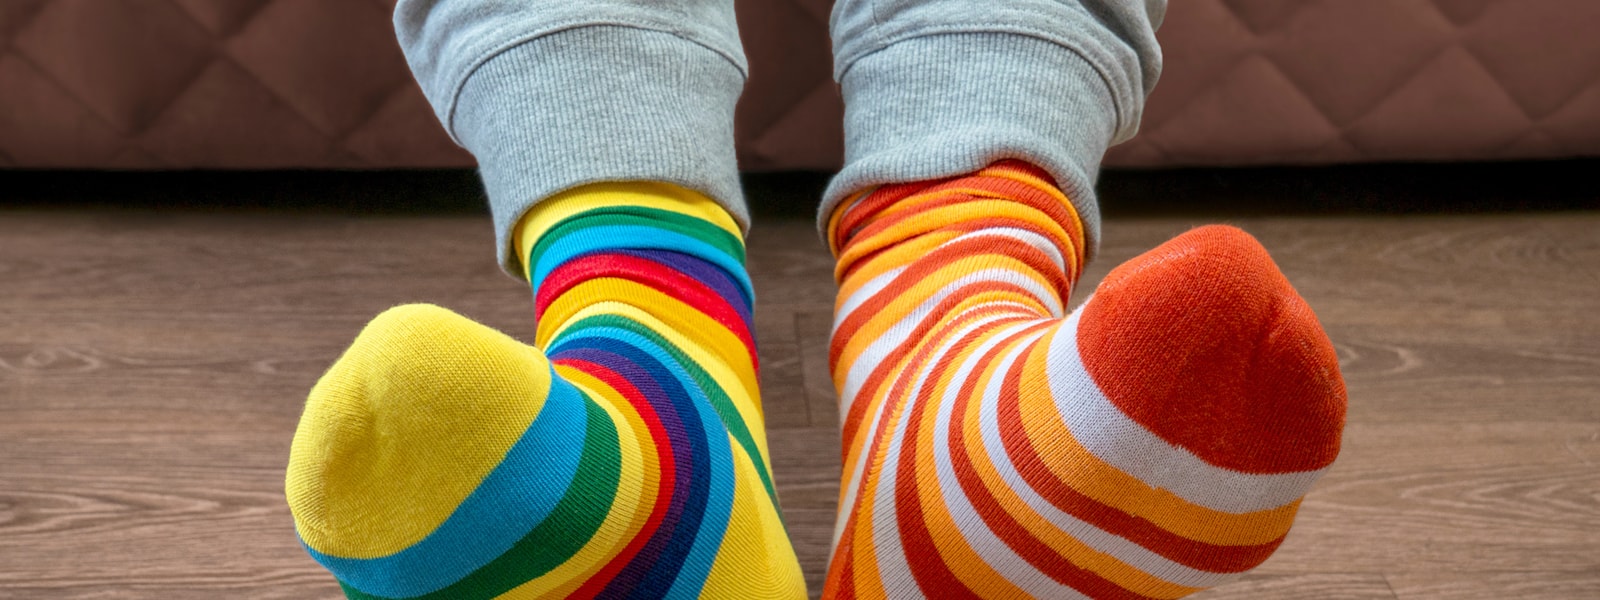 socks on feet